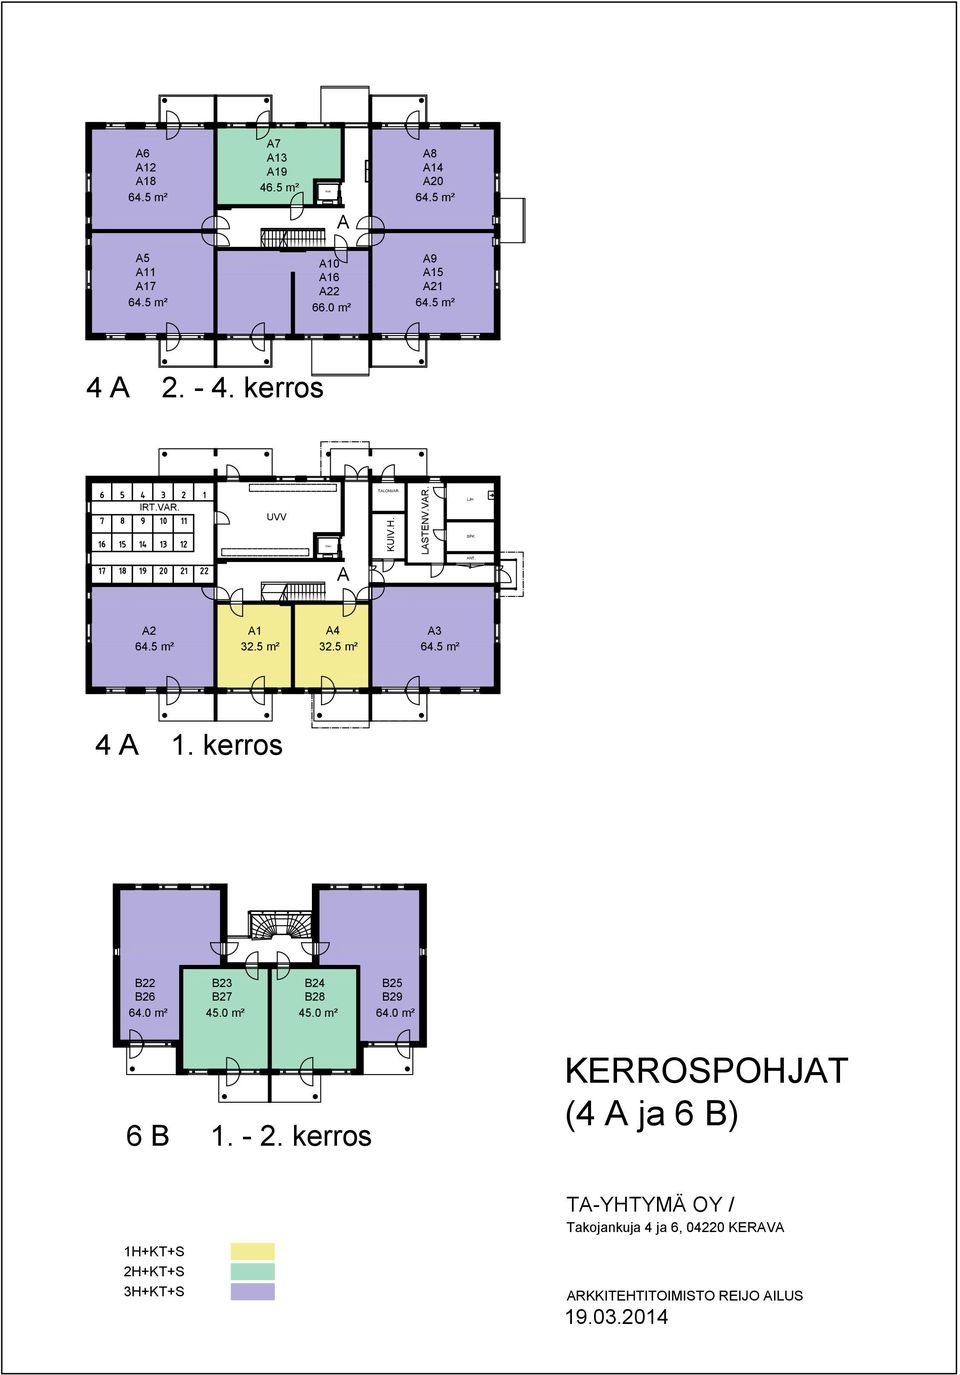 VAR. LJH PK A ANT. A2 64.5 m² A1 32.5 m² A4 32.5 m² A3 64.5 m² 4 A 1. kerros B22 B26 64.0 m² B23 B27 45.